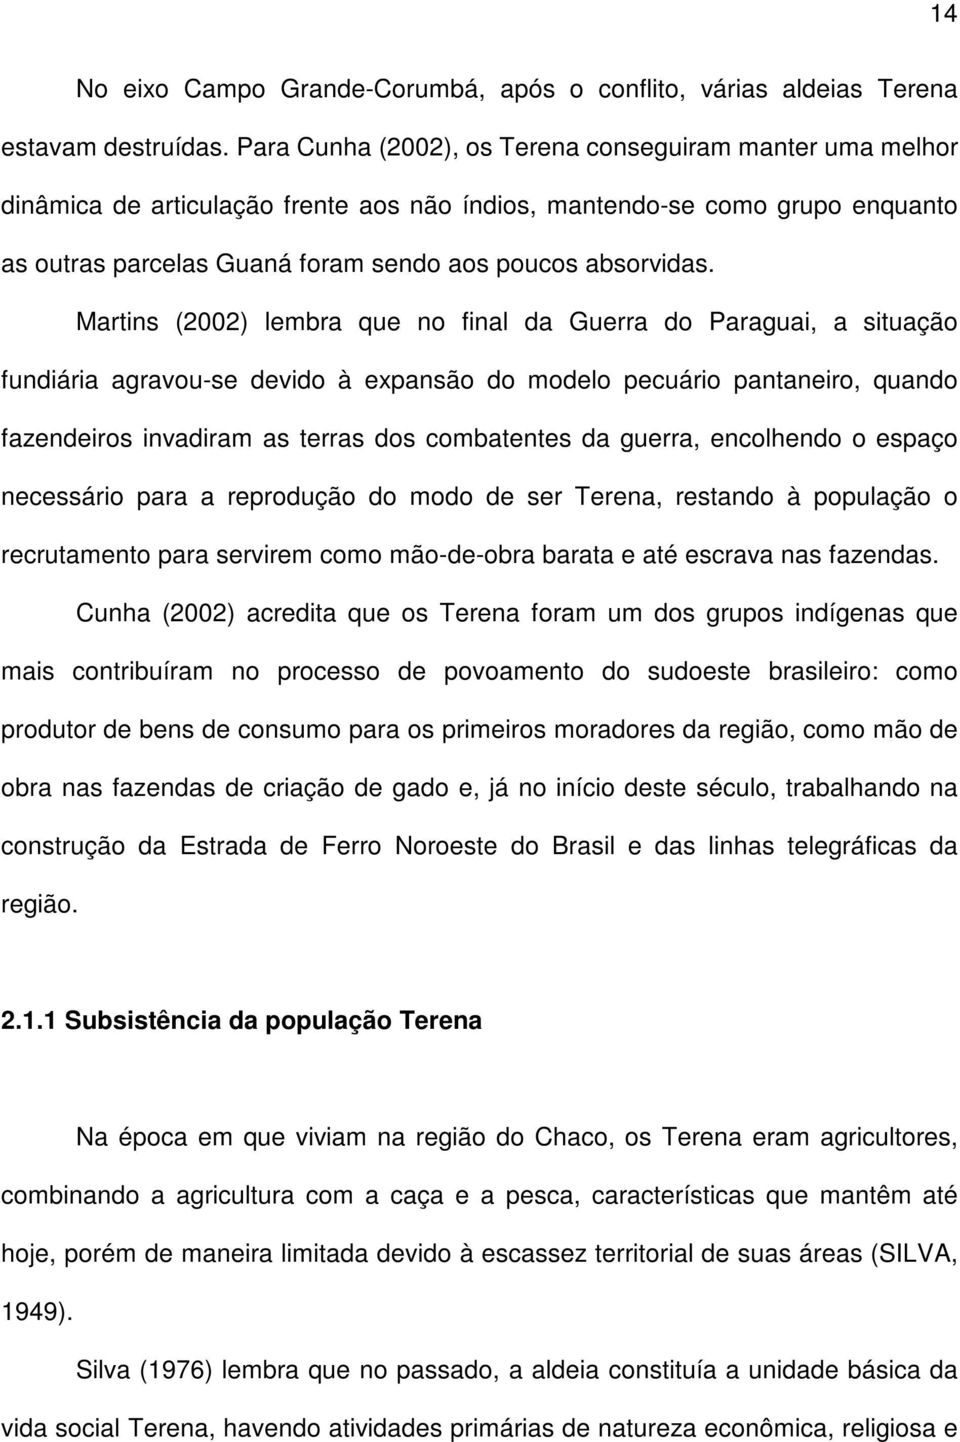 Martins (2002) lembra que no final da Guerra do Paraguai, a situação fundiária agravou-se devido à expansão do modelo pecuário pantaneiro, quando fazendeiros invadiram as terras dos combatentes da